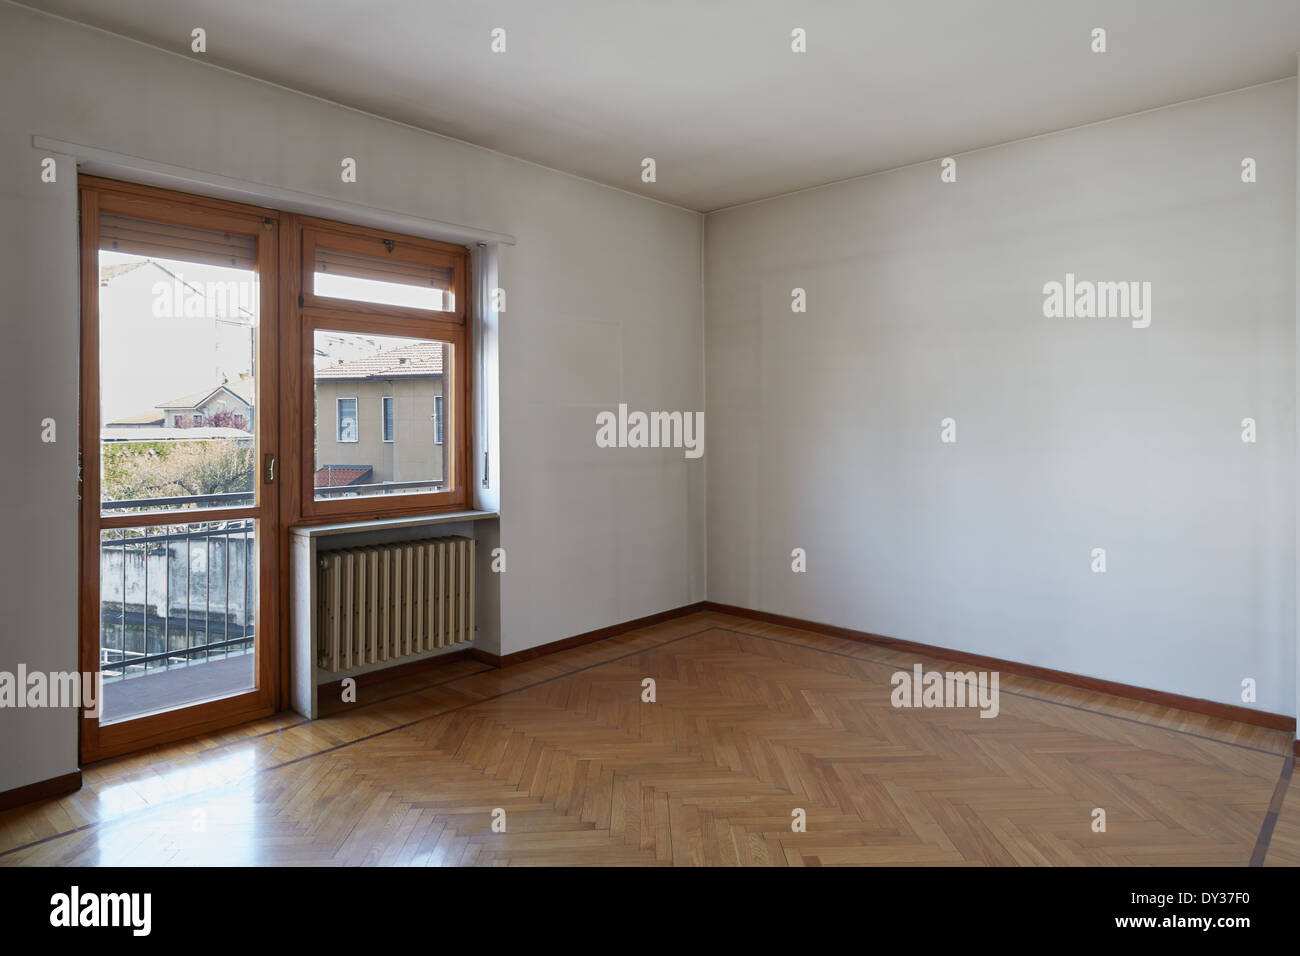 Leeren Raum mit Holzboden und schmutzige weiße Wände Stockfoto